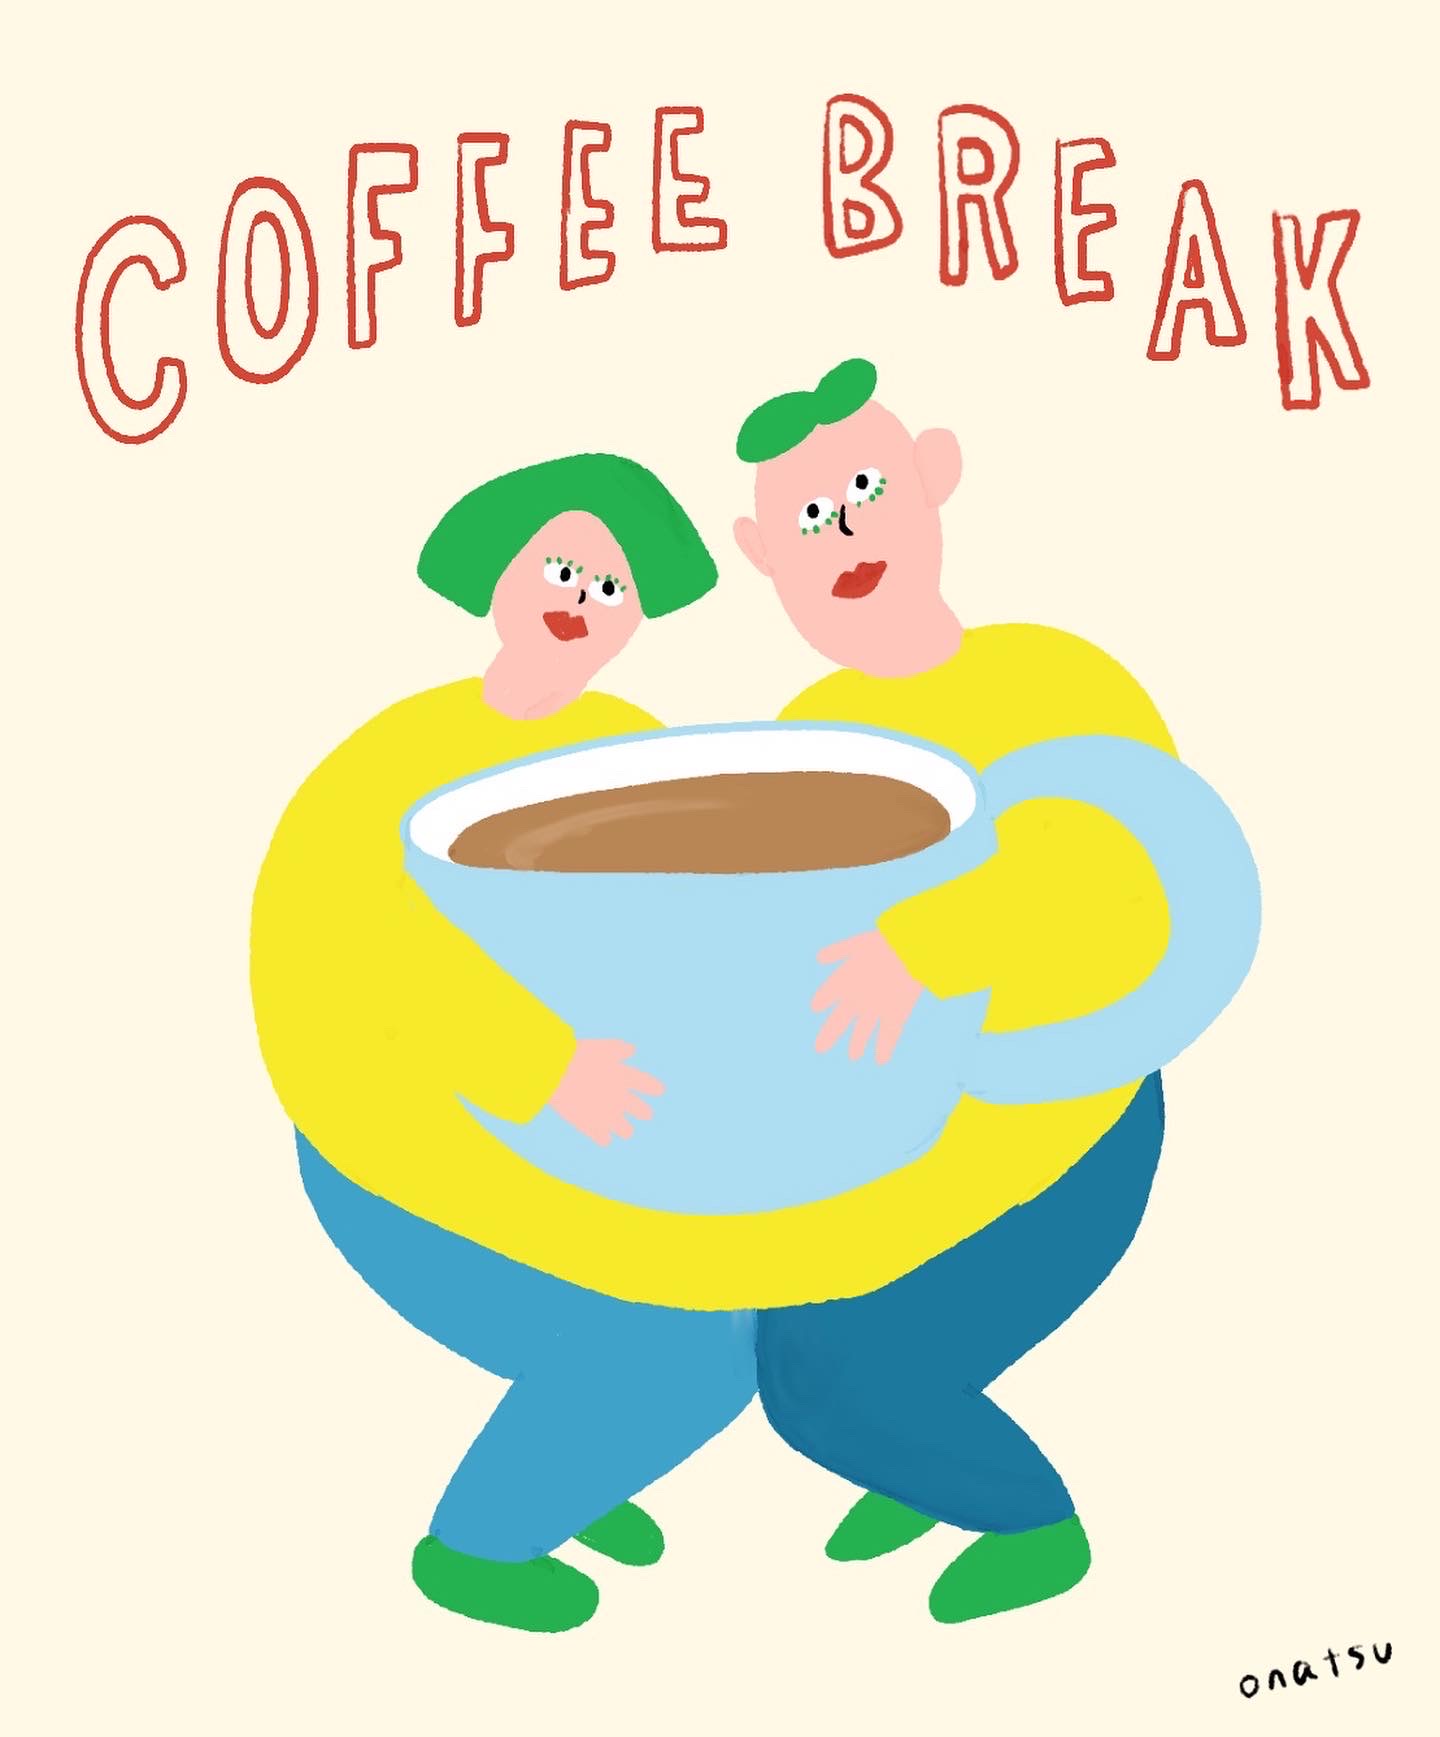 onatsuのイラスト「Coffee Break」